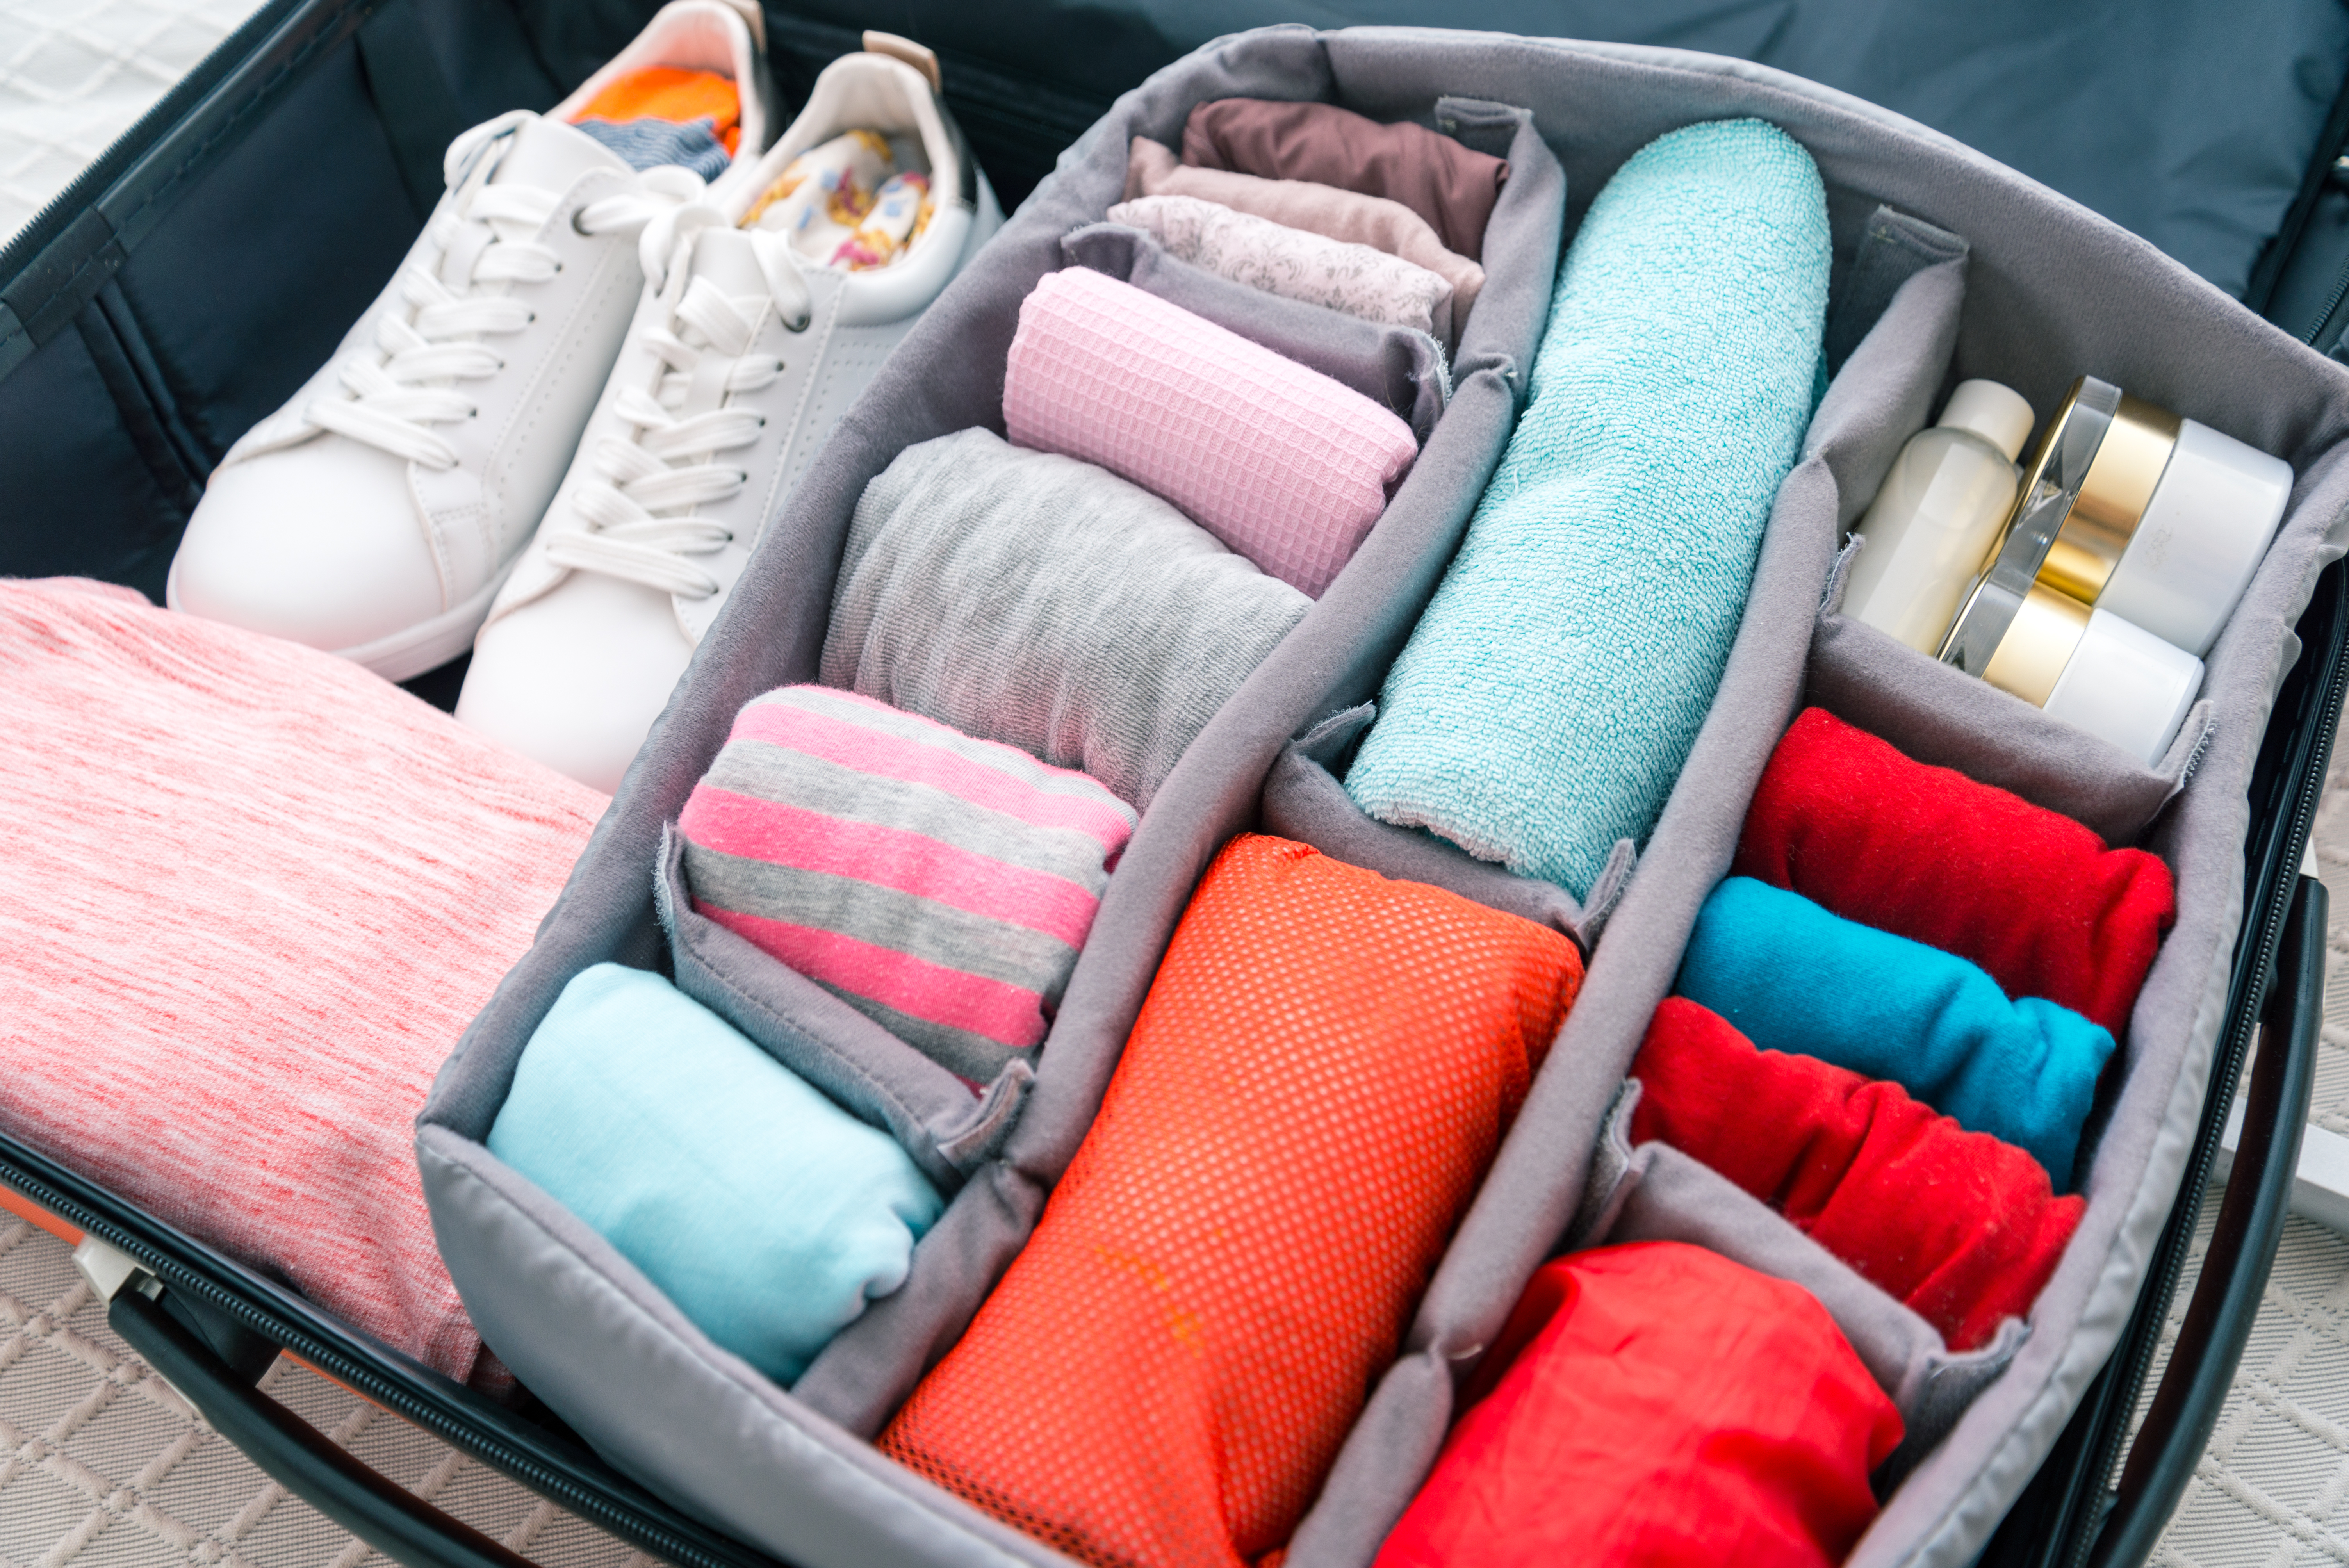 Llevar una muda de ropa interior, al menos, en el equipaje de mano, puede ayudar a que más de un viajero llegue a su destino en mejores condiciones. (Shutterstock)